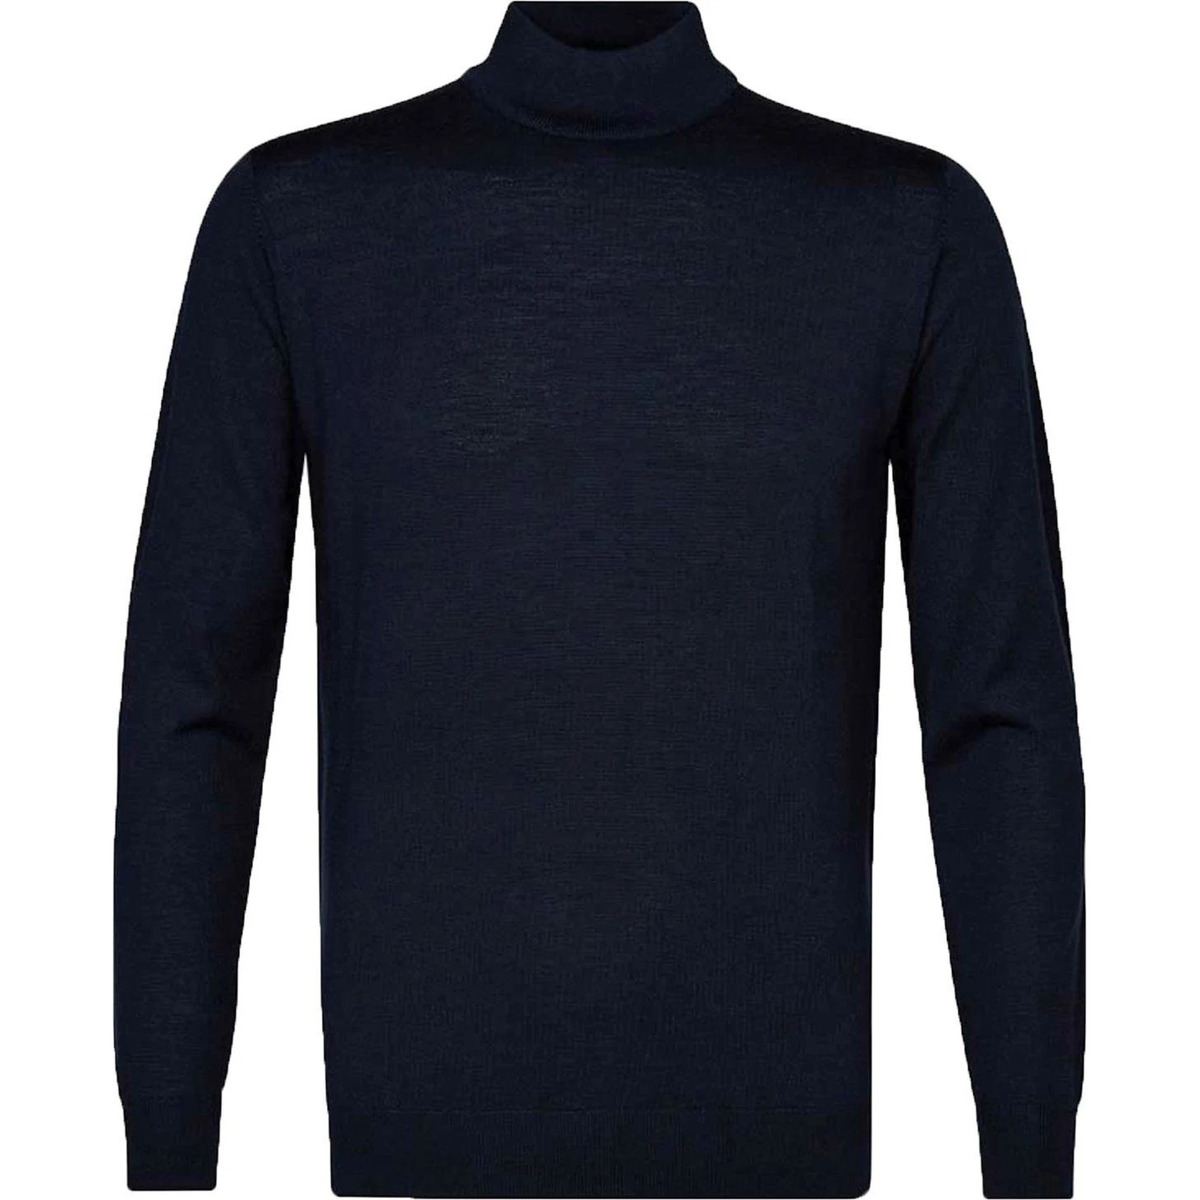 Textiel Heren Sweaters / Sweatshirts Profuomo Turtleneck Trui Merino Navy Blauw